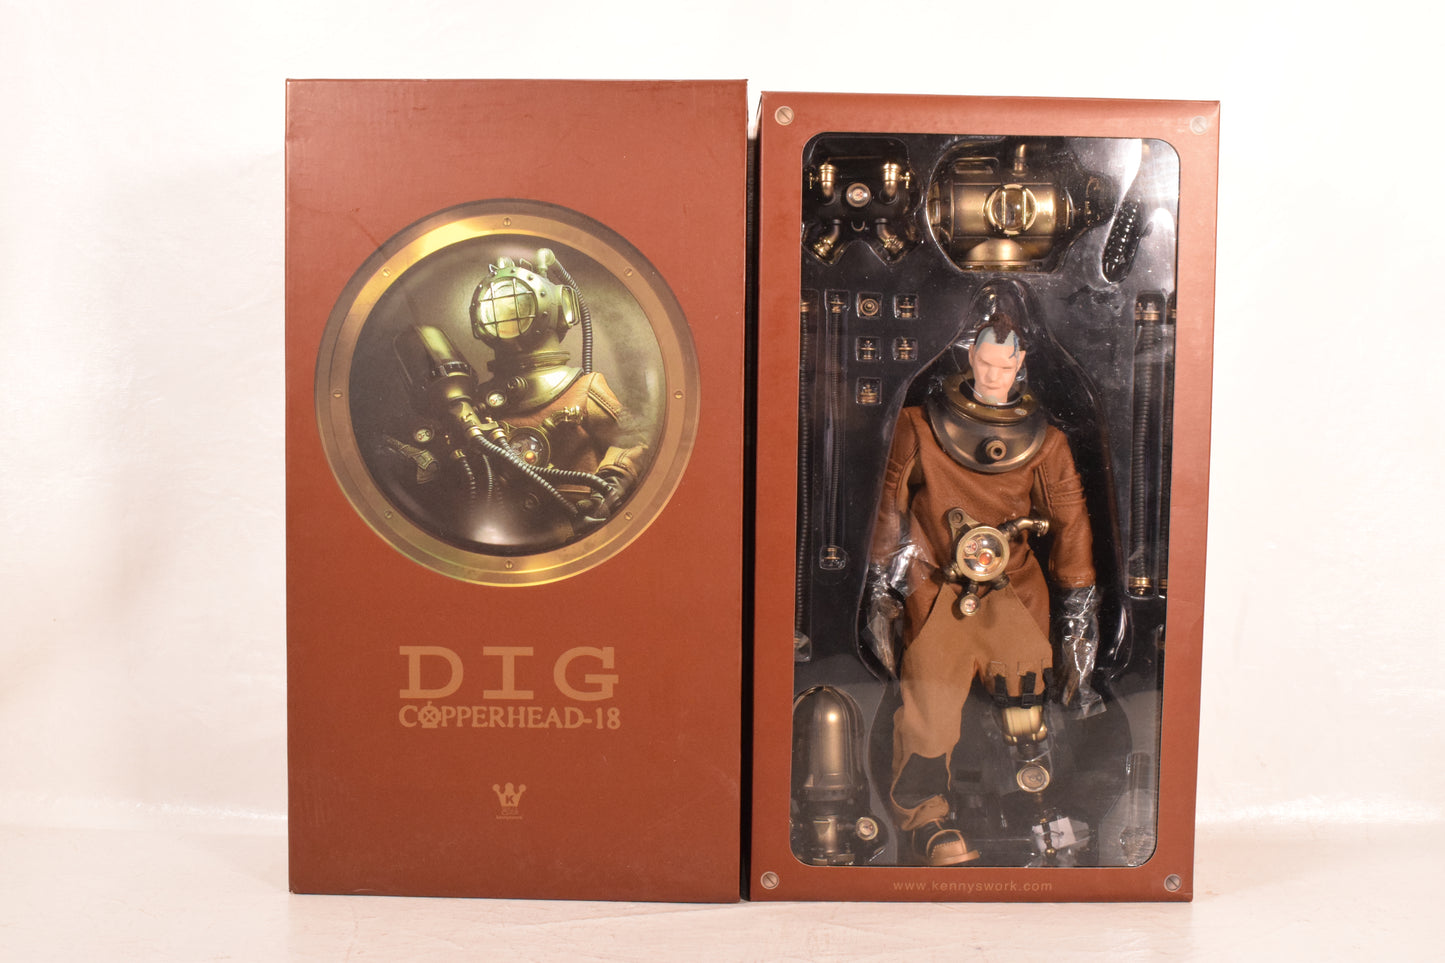 Dig Copperhead-18 Figure Hot Toys 1:6 Scale Kennyswork NIB